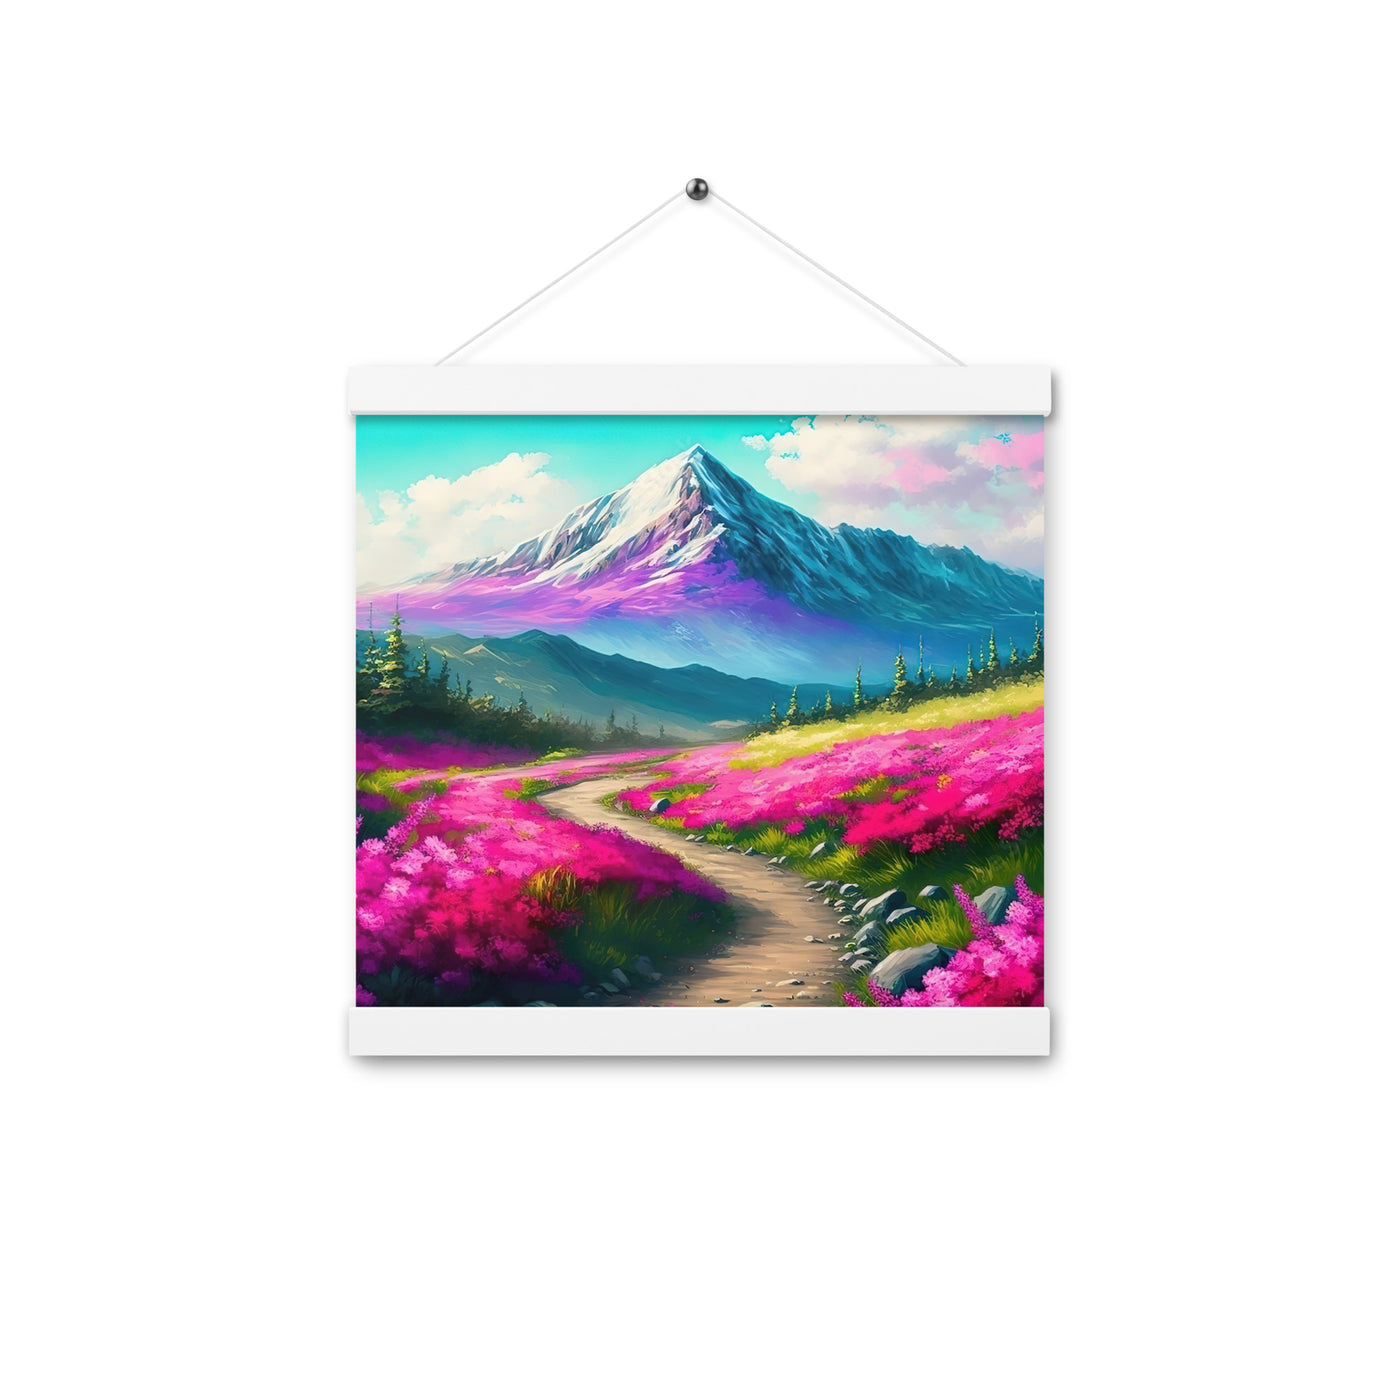 Berg, pinke Blumen und Wanderweg - Landschaftsmalerei - Premium Poster mit Aufhängung berge xxx 30.5 x 30.5 cm